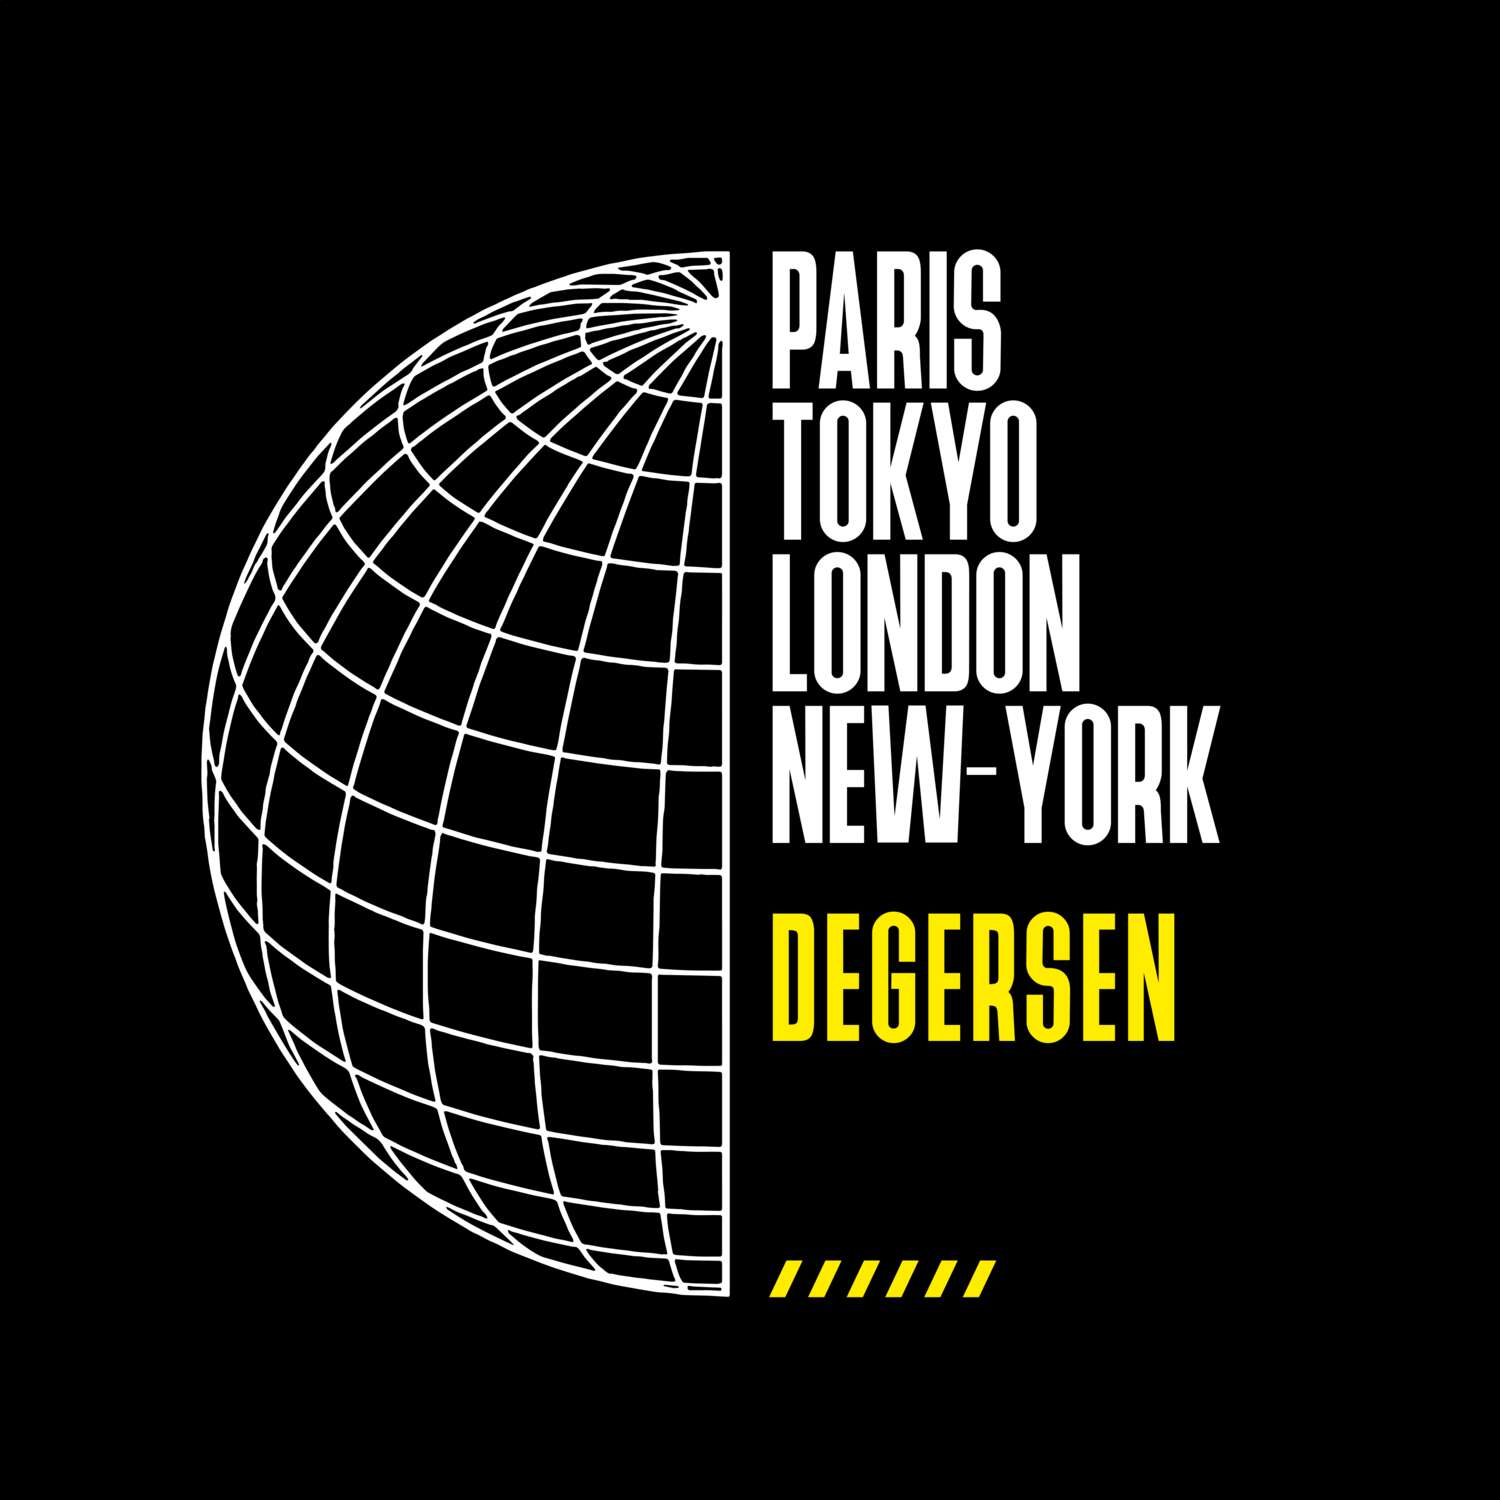 Degersen T-Shirt »Paris Tokyo London«